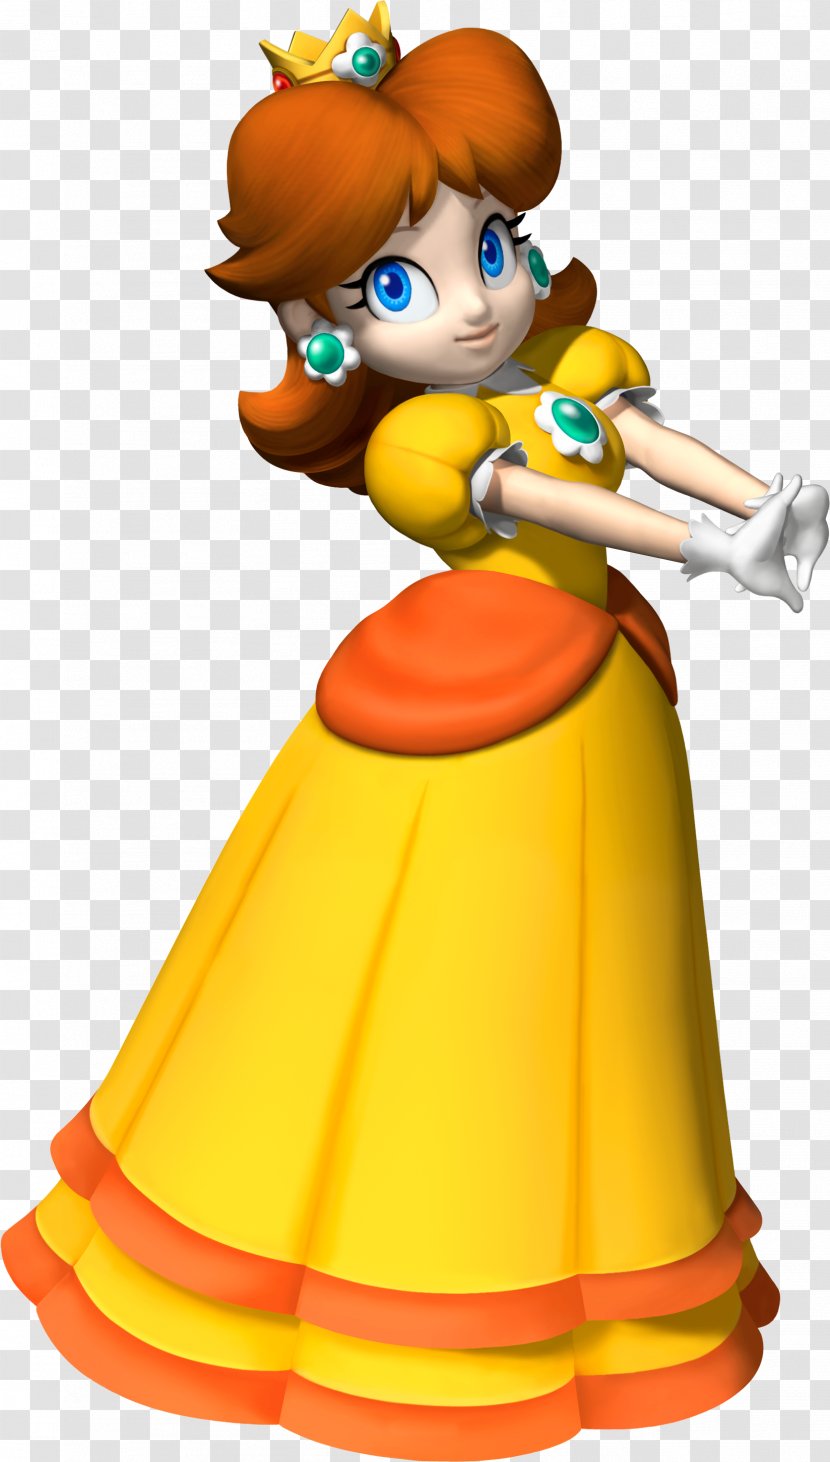 Princess Daisy Peach Mario Bros. Luigi - Nintendo Transparent PNG